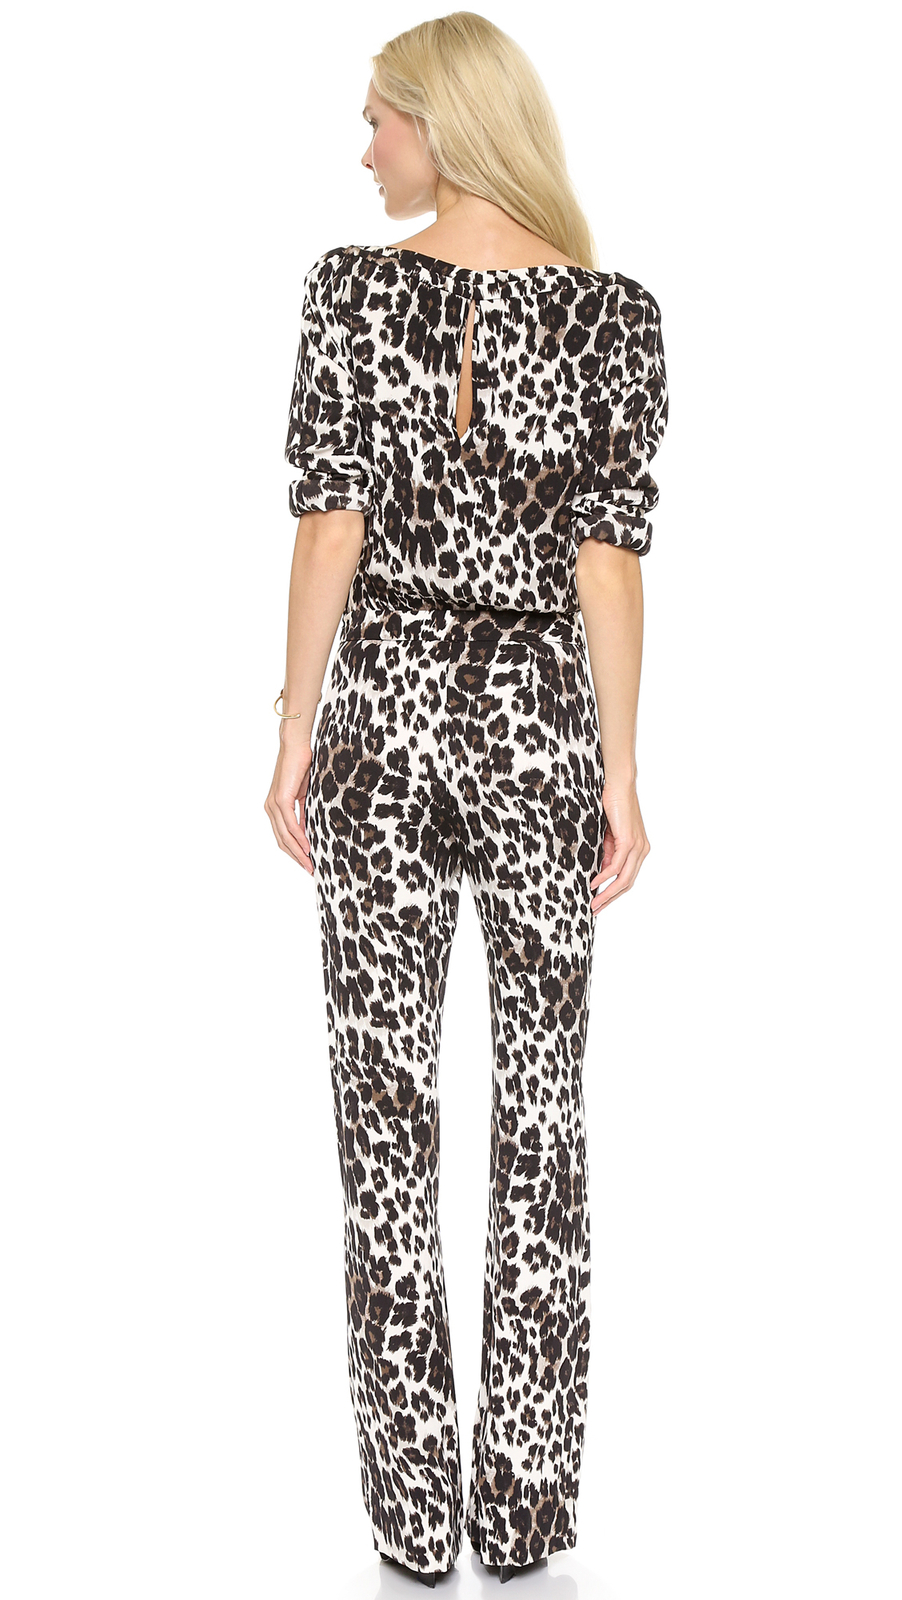 Diane von Furstenberg Cynthia Leopard Jumpsuit size 6 - Women's Clothing